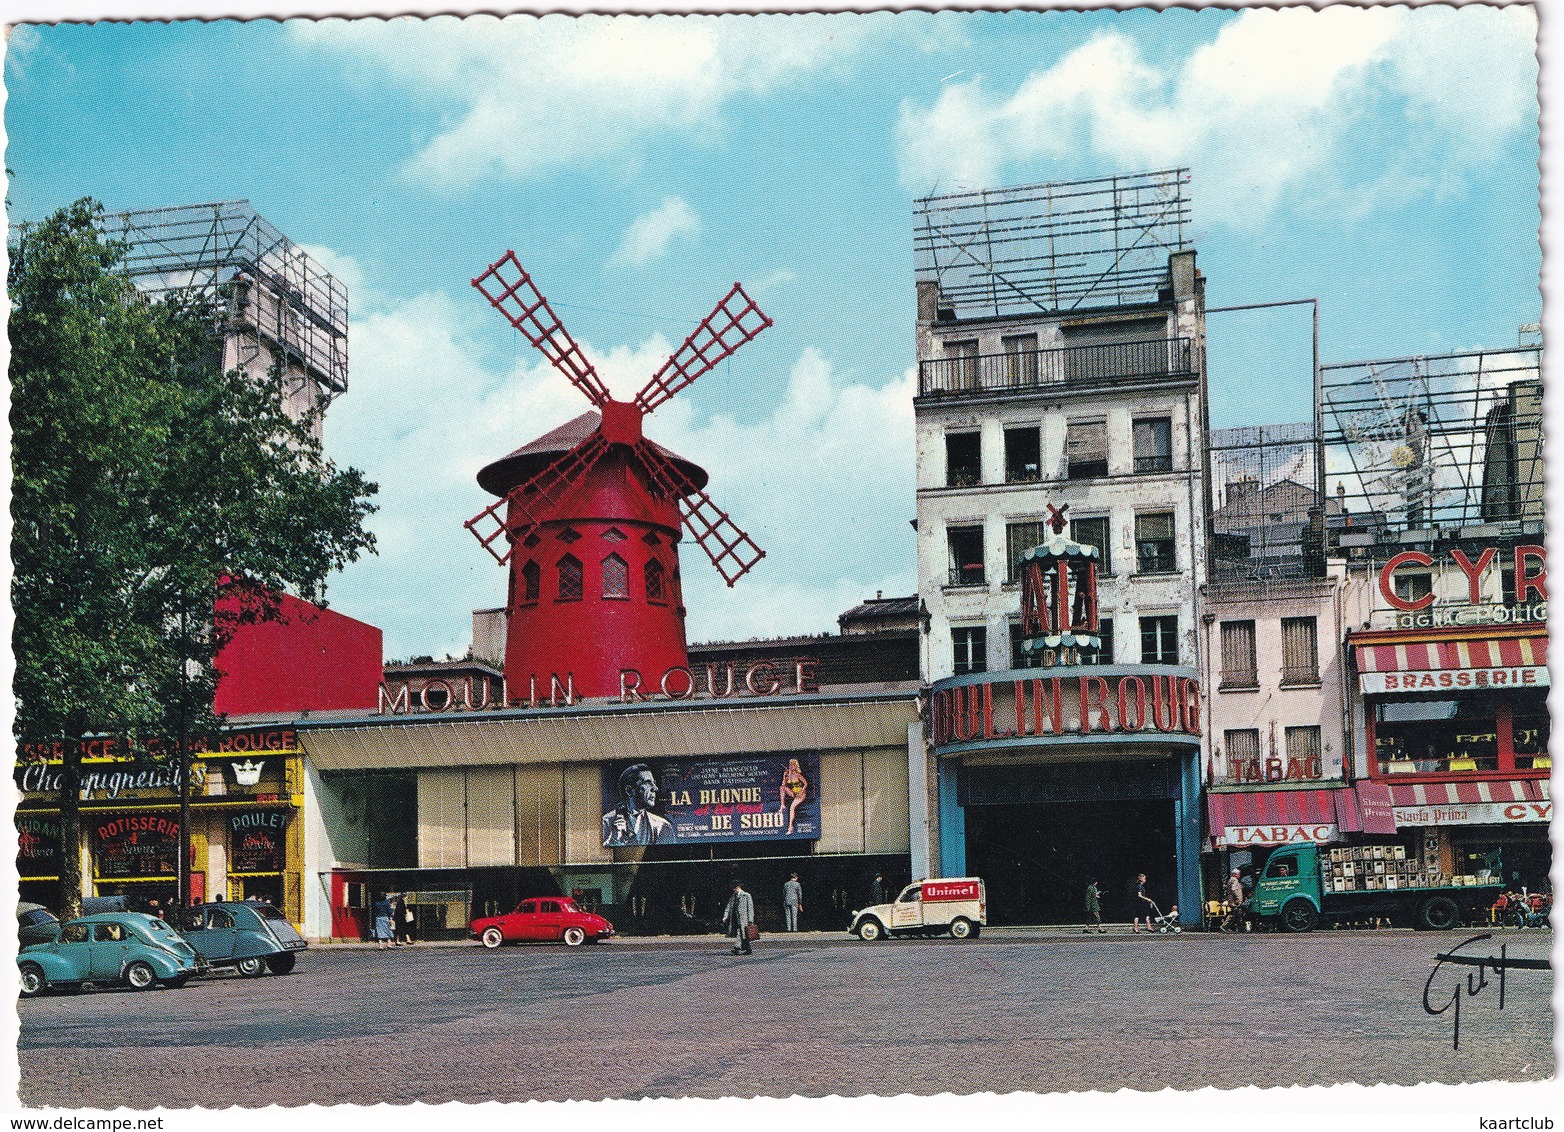 Paris: RENAULT 4CV, CITROËN 2CV, AZU, RENAULT DAUPHINE, GOELETTE PLATEAU - Le Moulin Rouge - Place Blanche - Toerisme